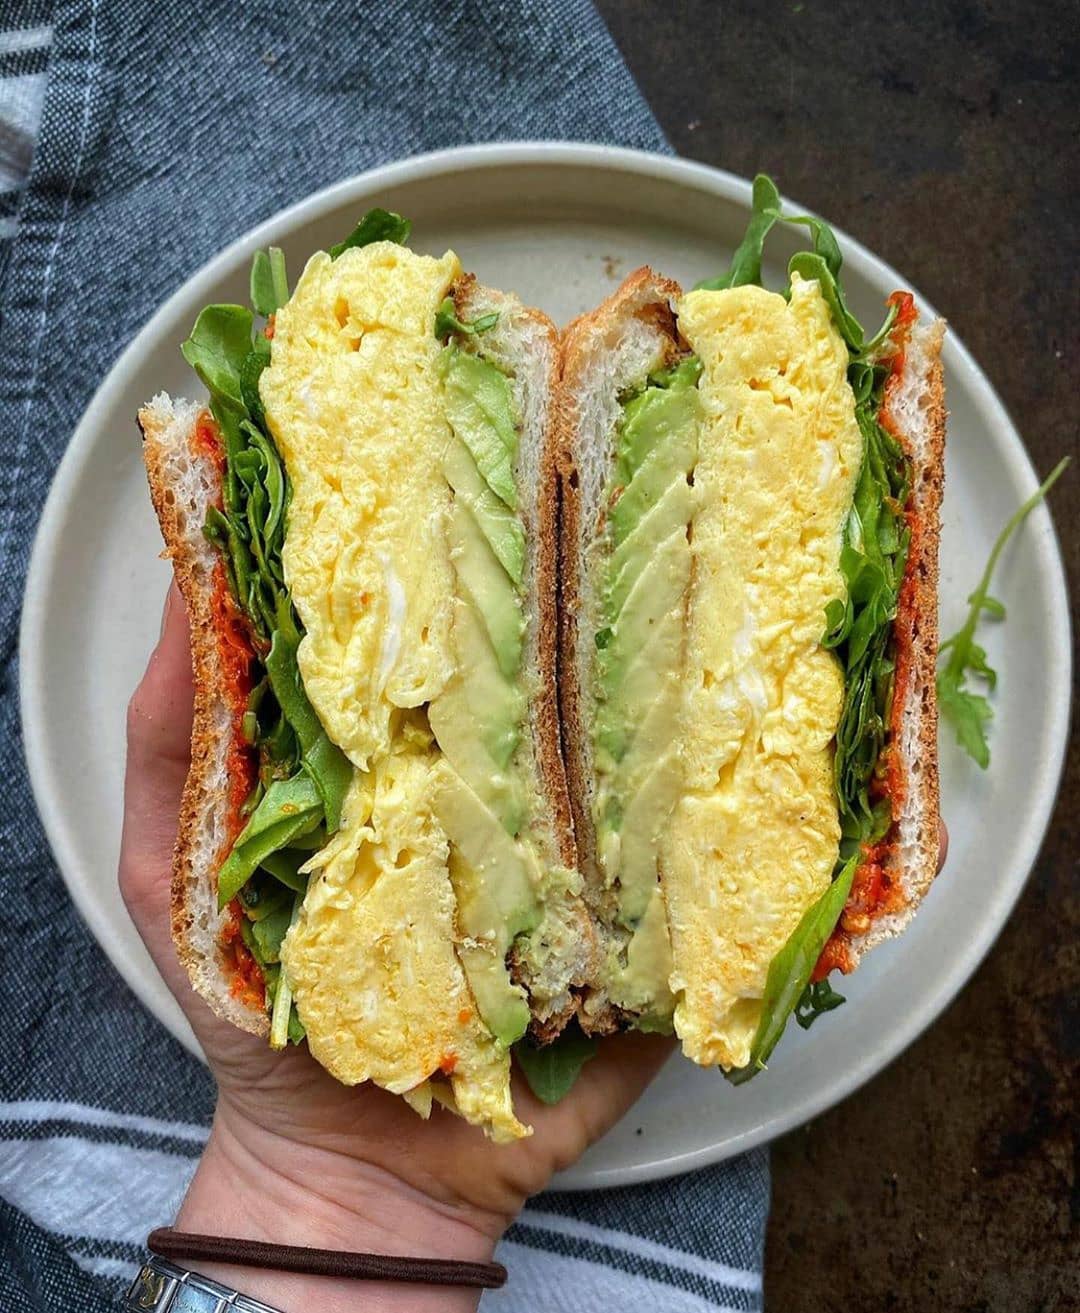 Breakfast sandwich